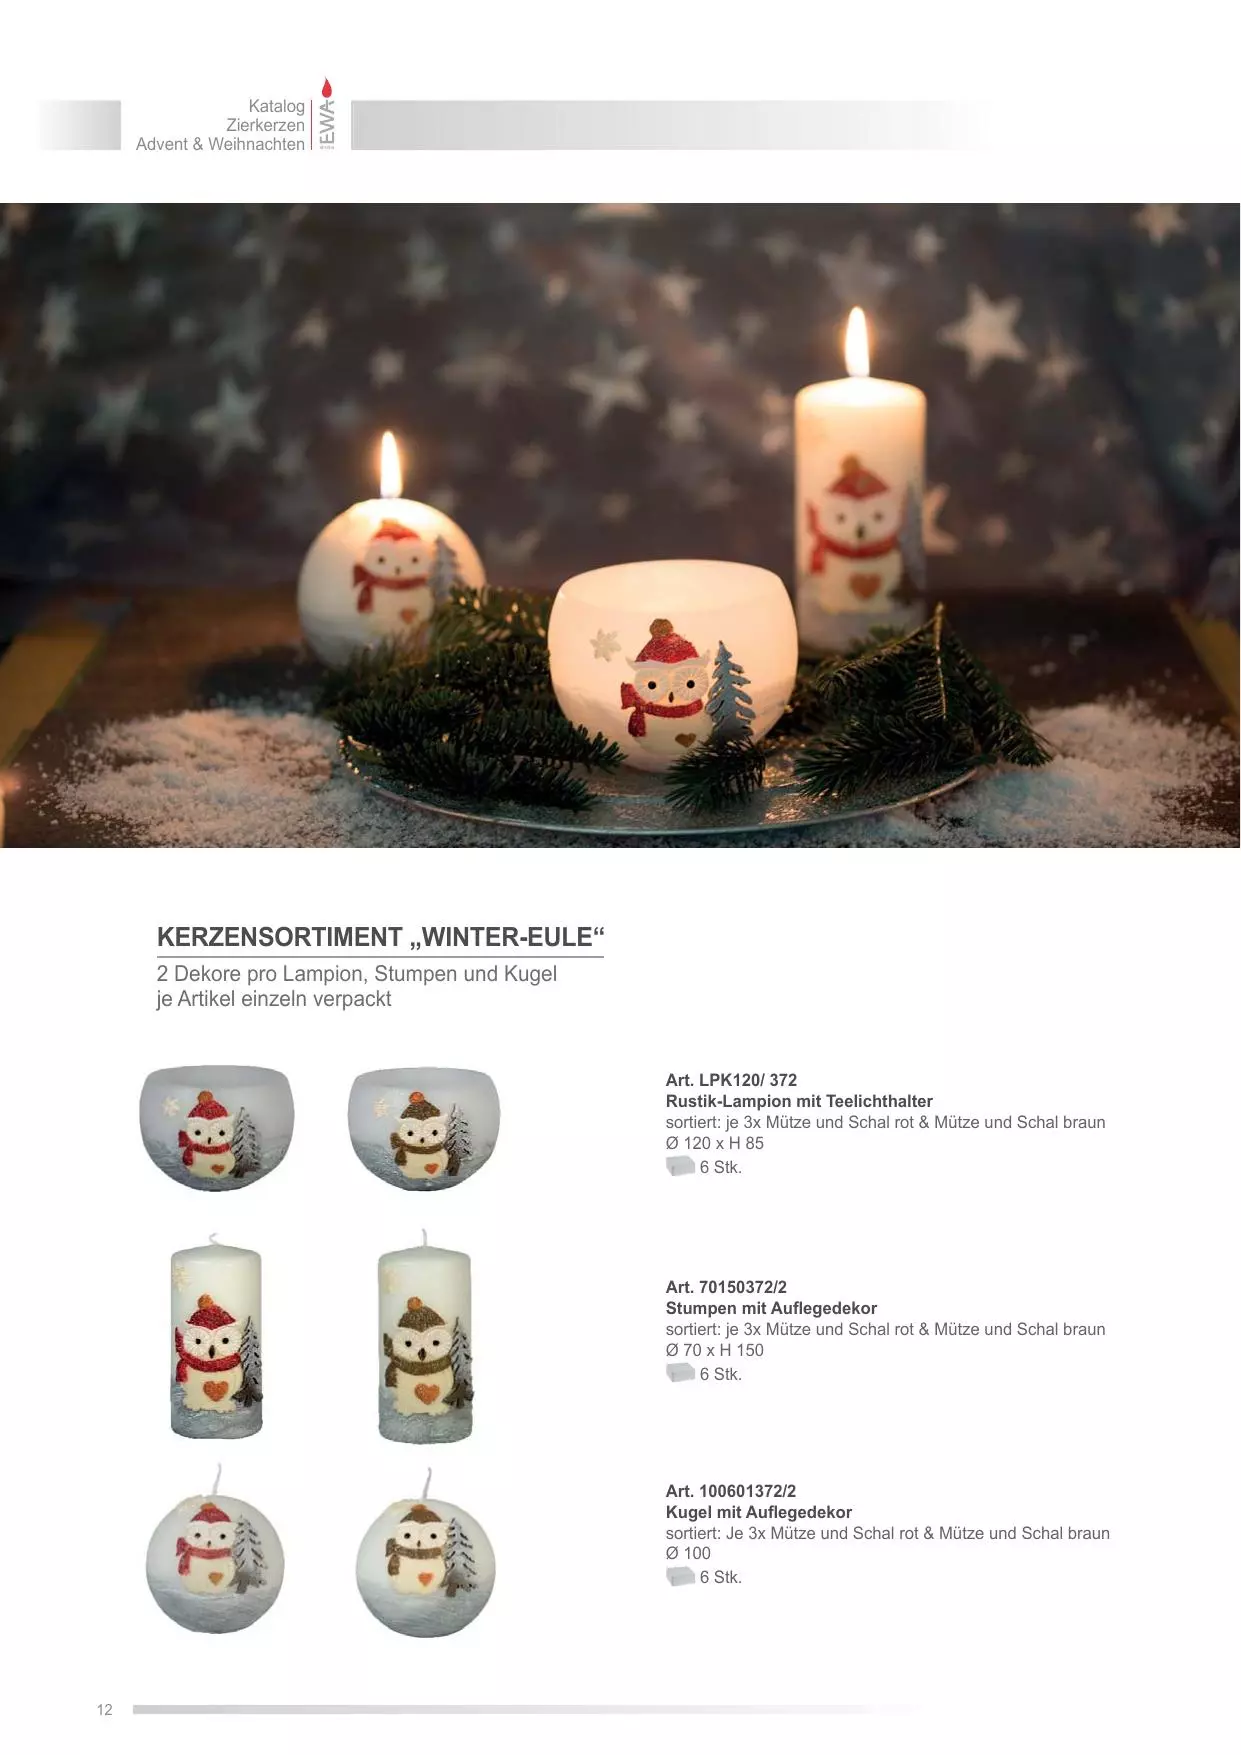 4 Stück Größe ca Ø 80 mm Ebersbacher Kerzenfabrik GmbH Kugelkerzen weinrot lackiert runde Kerze Weihnachtskerze Adventskerze einzeln in Folie